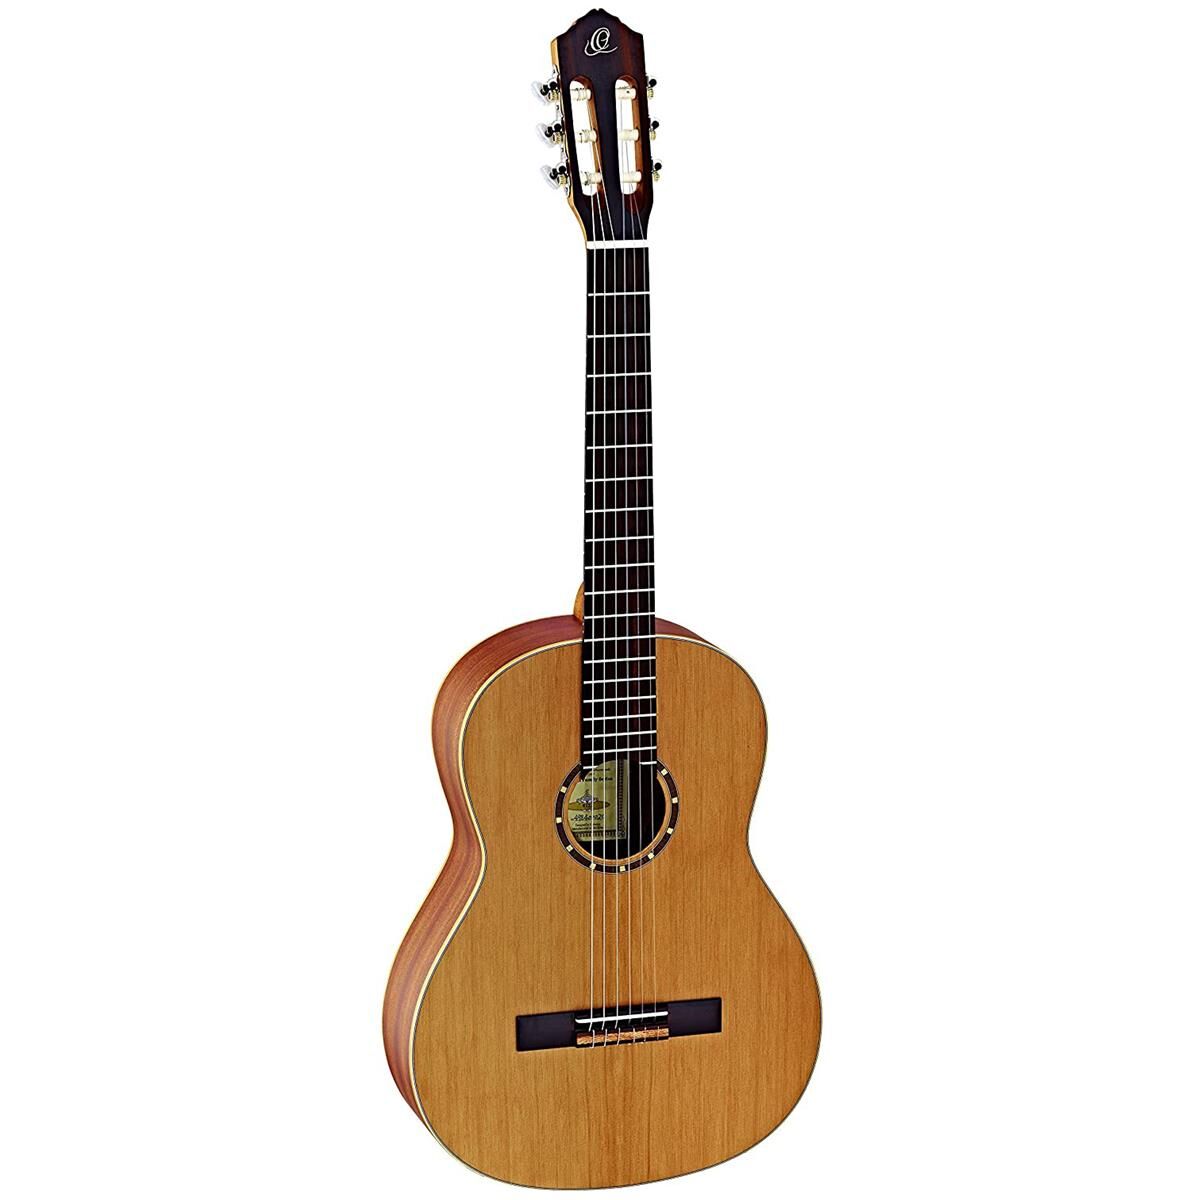 Ortega Guitars R122 Family Series Cedar Top Acoustic Guitar, Natural